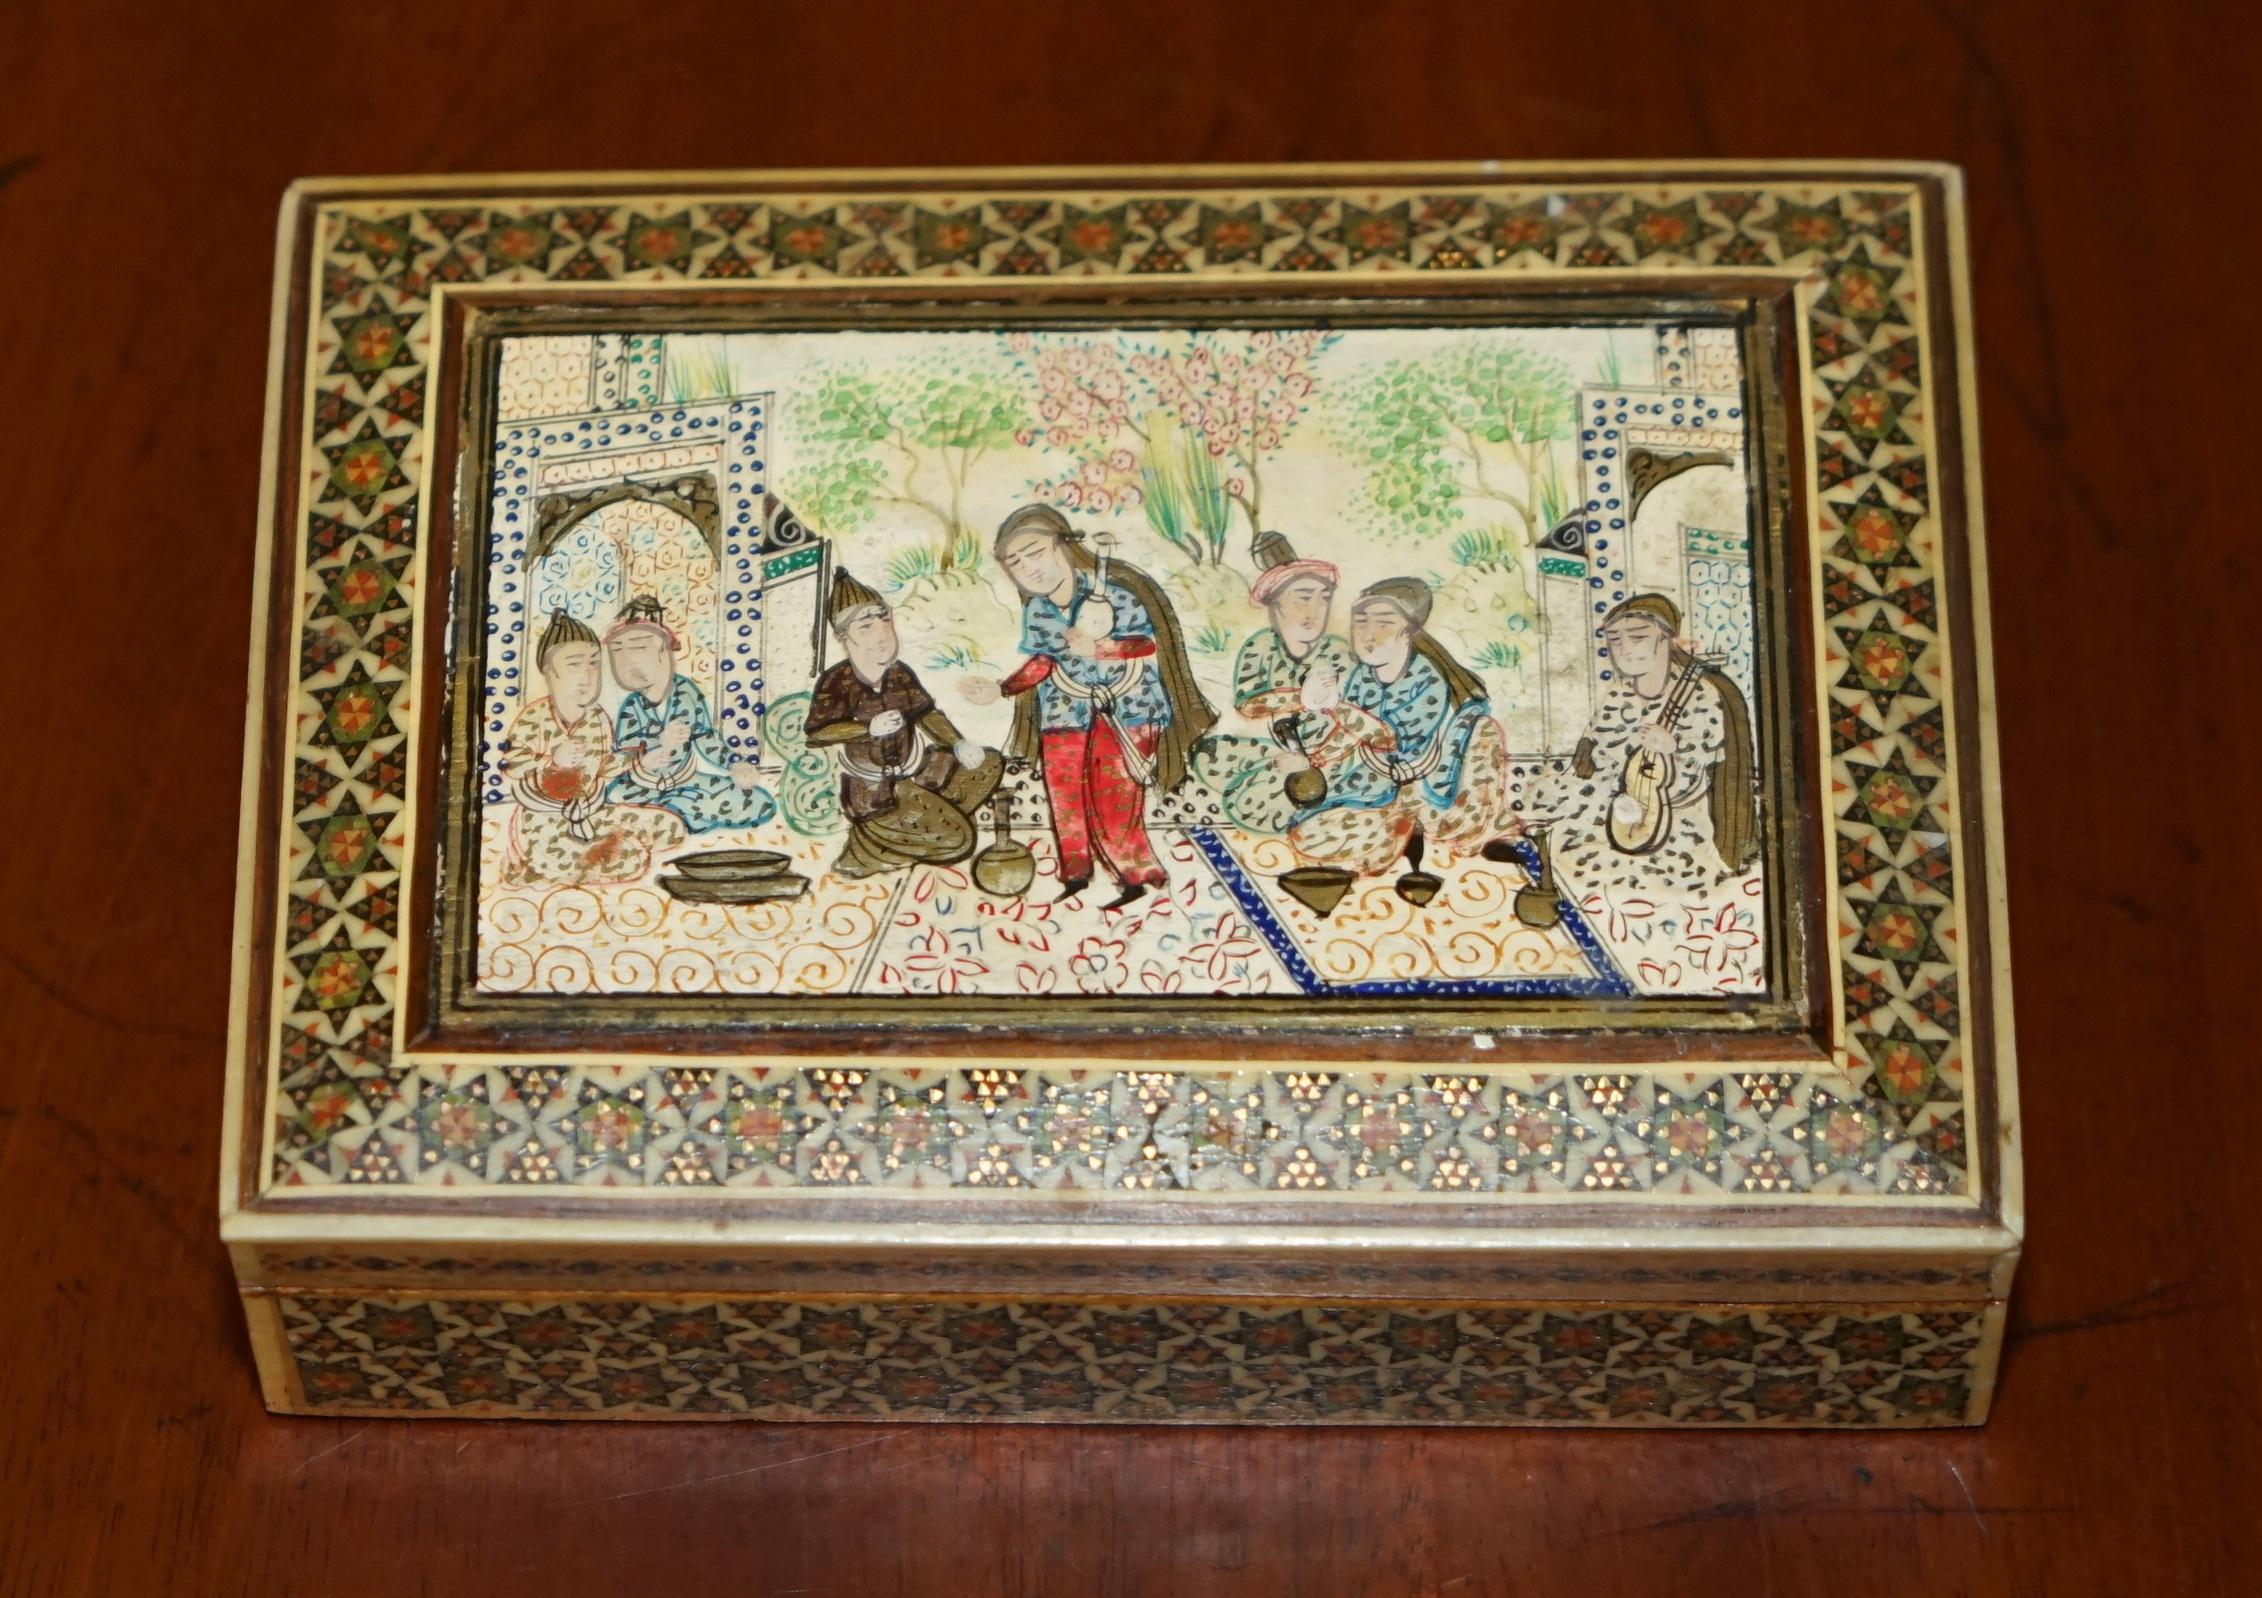 Royal House Antiques

Royal House Antiques ist erfreut, diese schöne, super dekorative antike persisch-orientalische Zigarettenschachtel mit wunderschön dekorativem oberen Bild und wunderbar eingelegten Seitenteilen zum Verkauf anzubieten

Ein